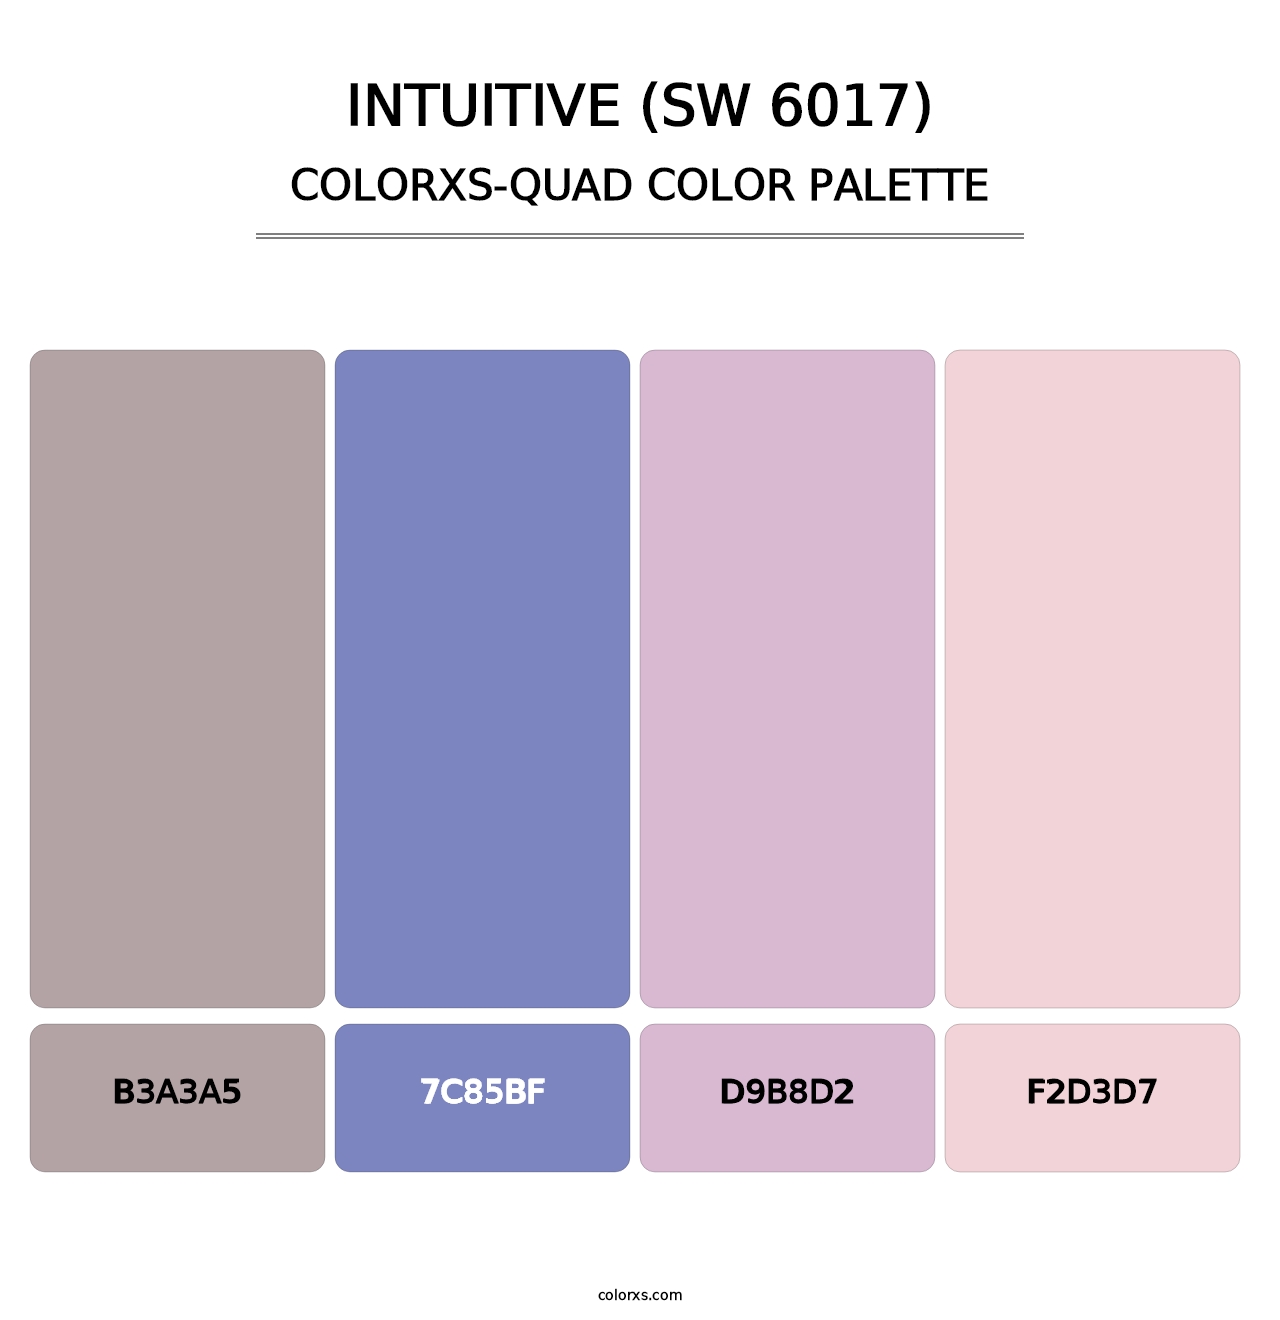 Intuitive (SW 6017) - Colorxs Quad Palette